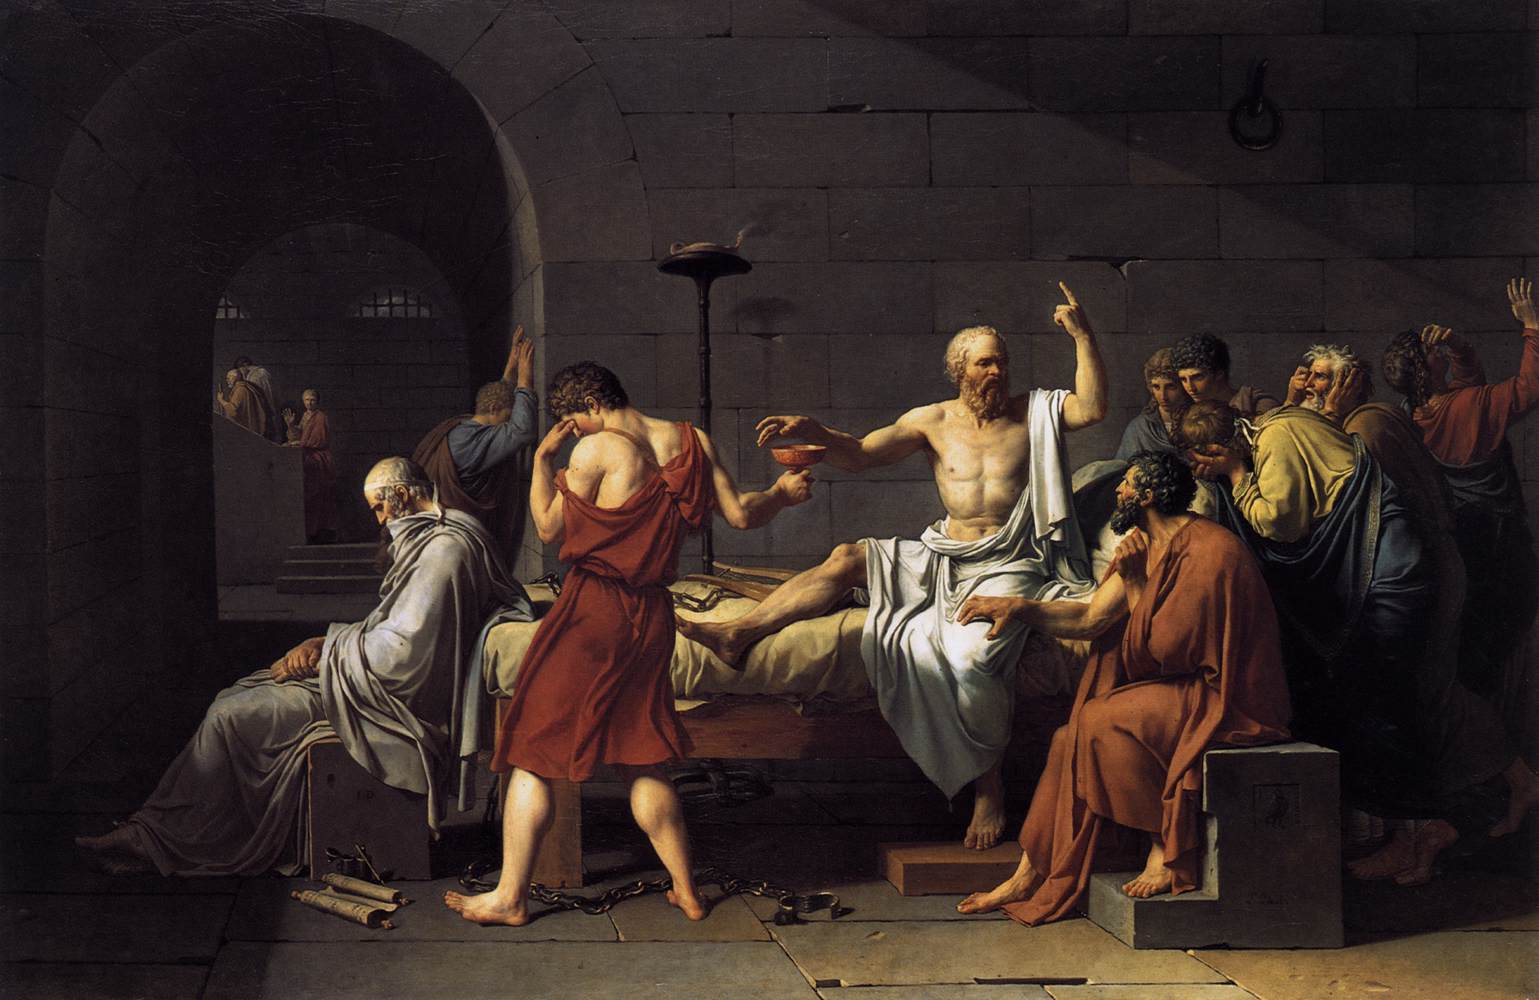 Sokrates död